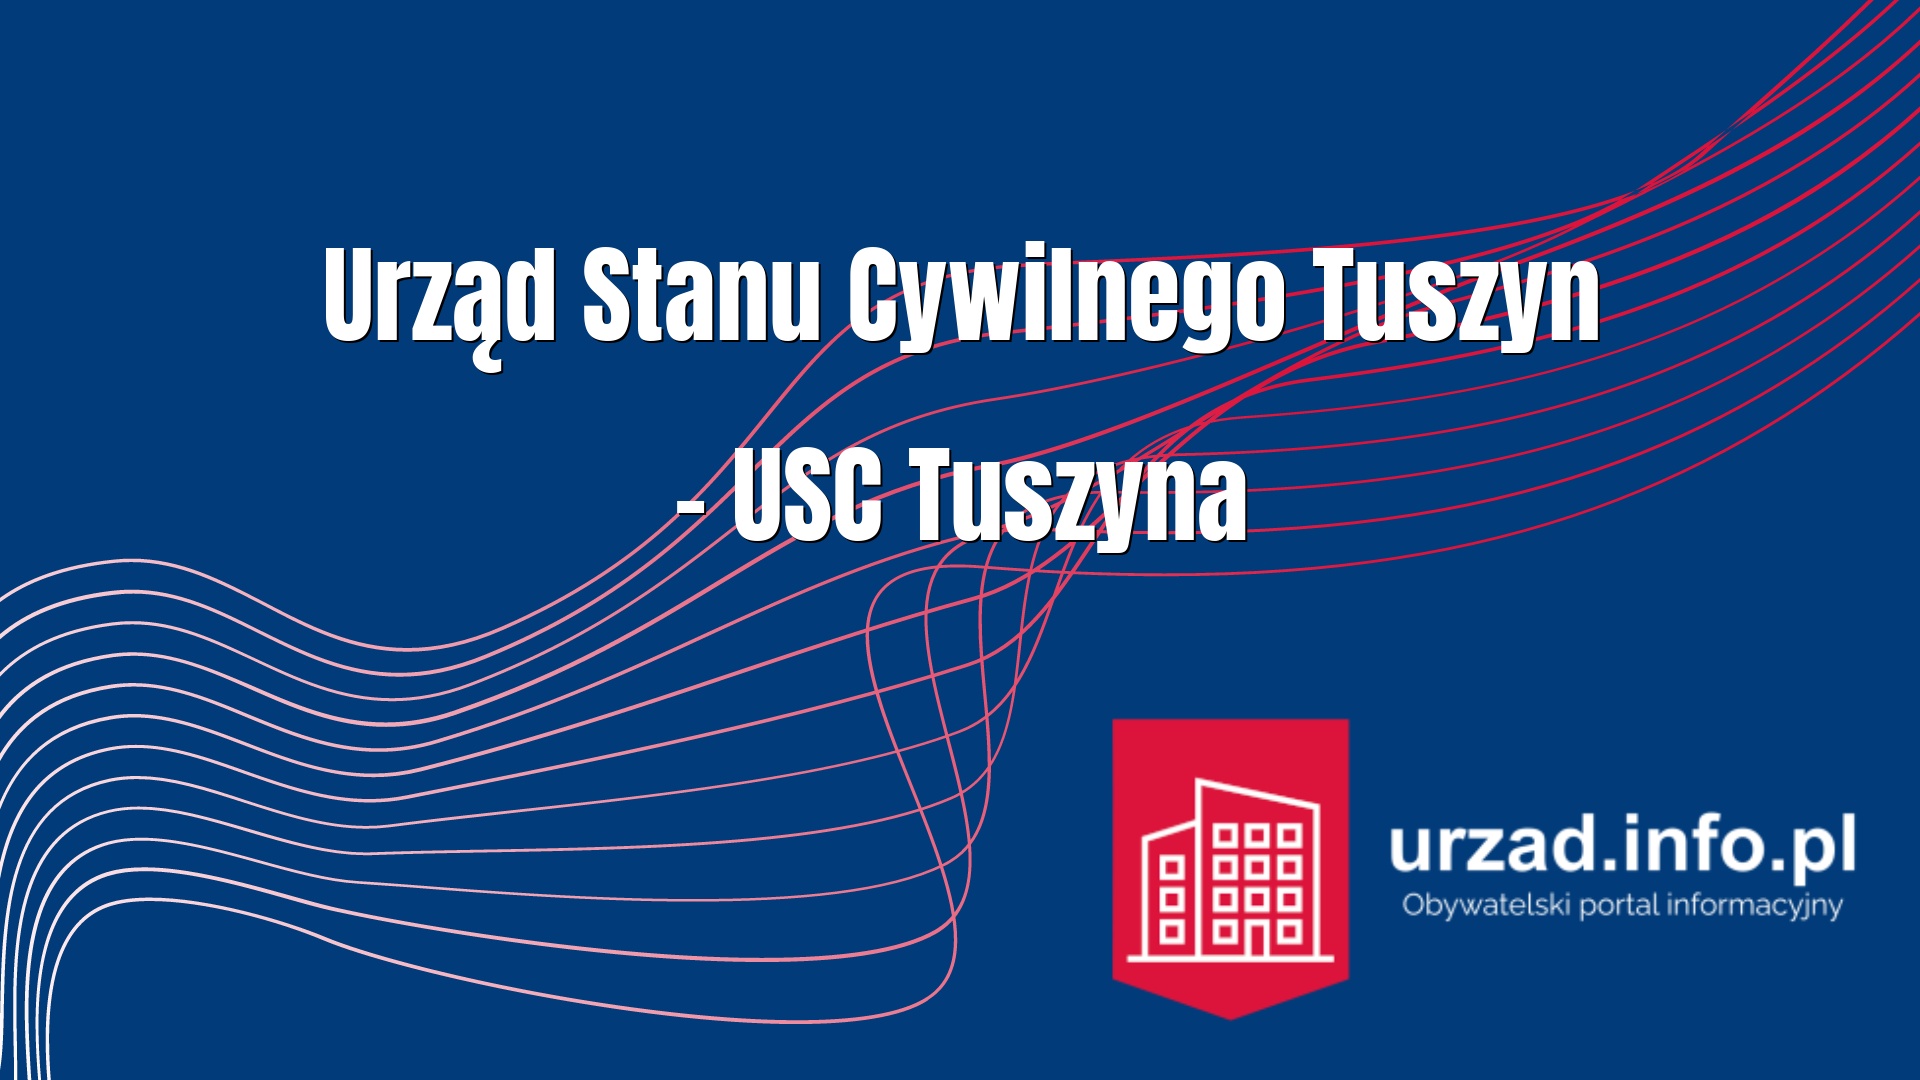 Urząd Stanu Cywilnego Tuszyn – USC Tuszyna